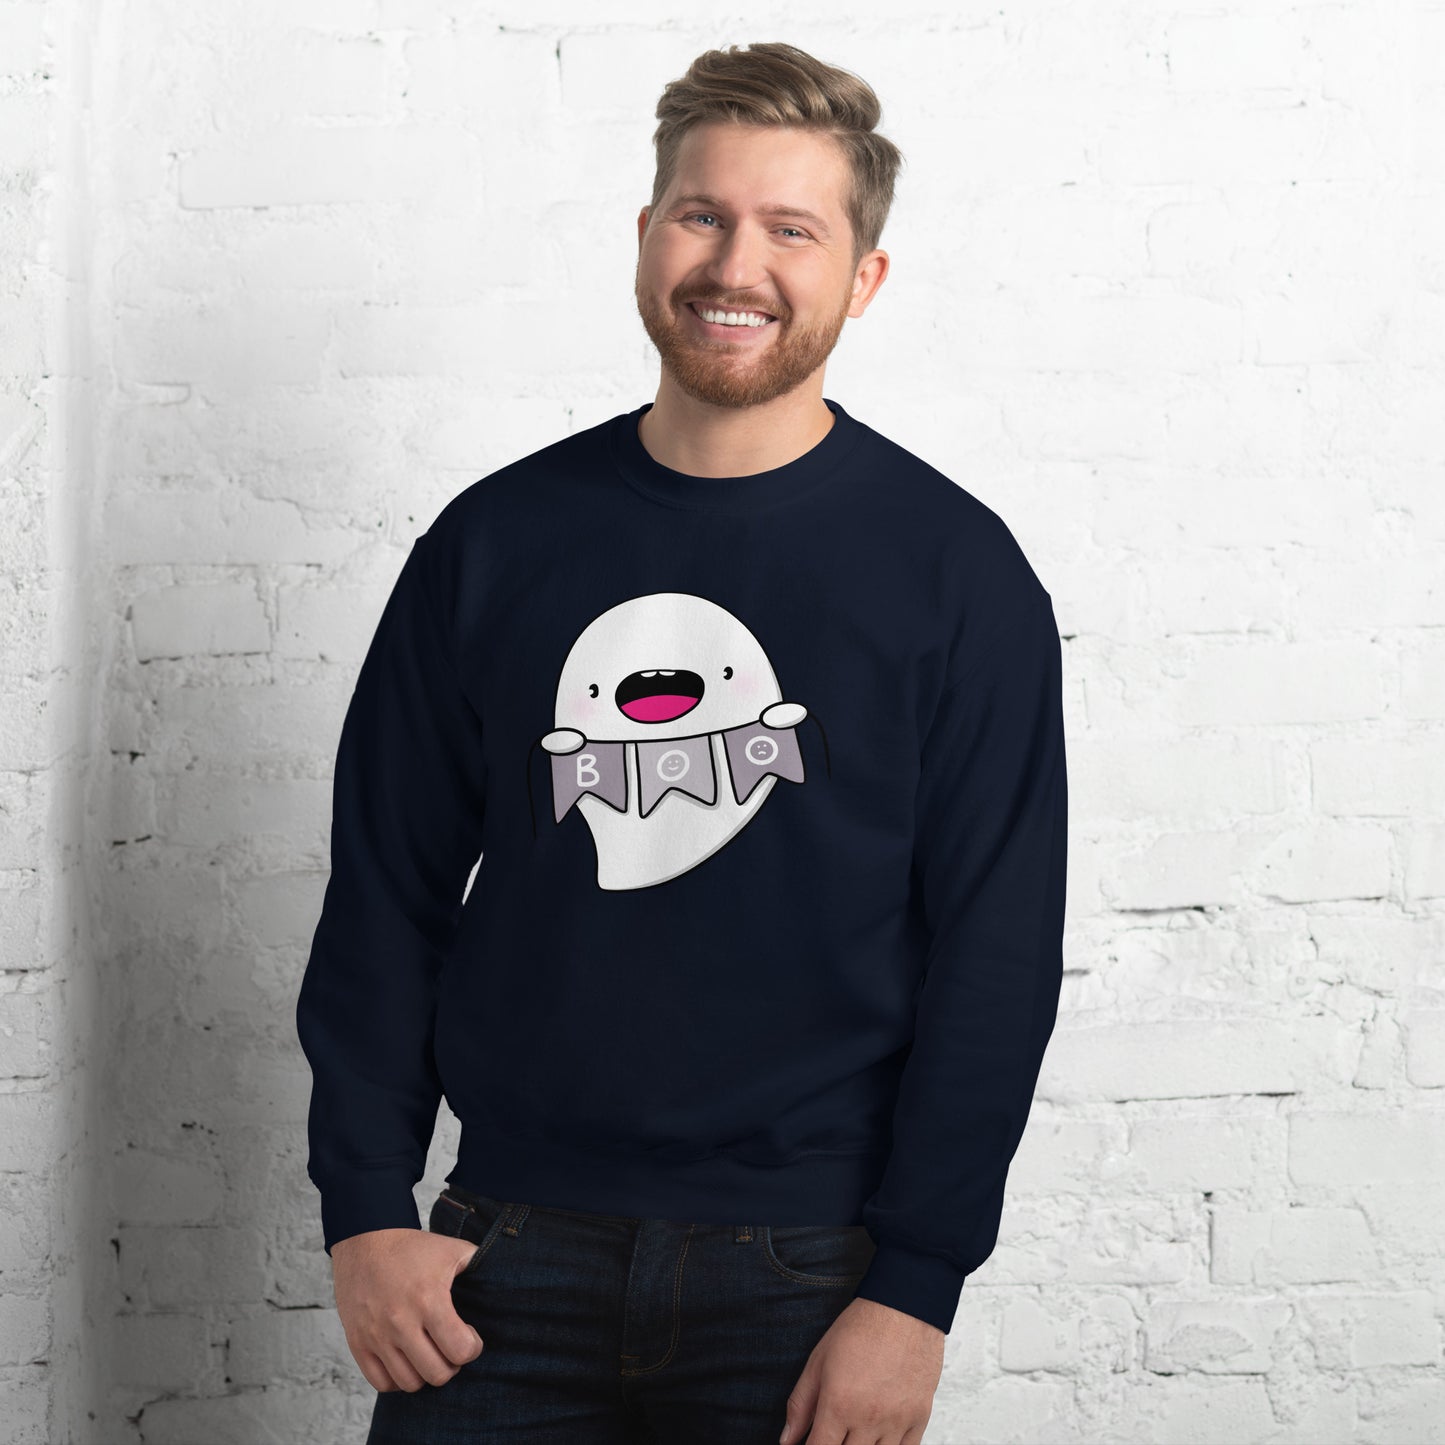 Boo - Unisex Sweatshirt